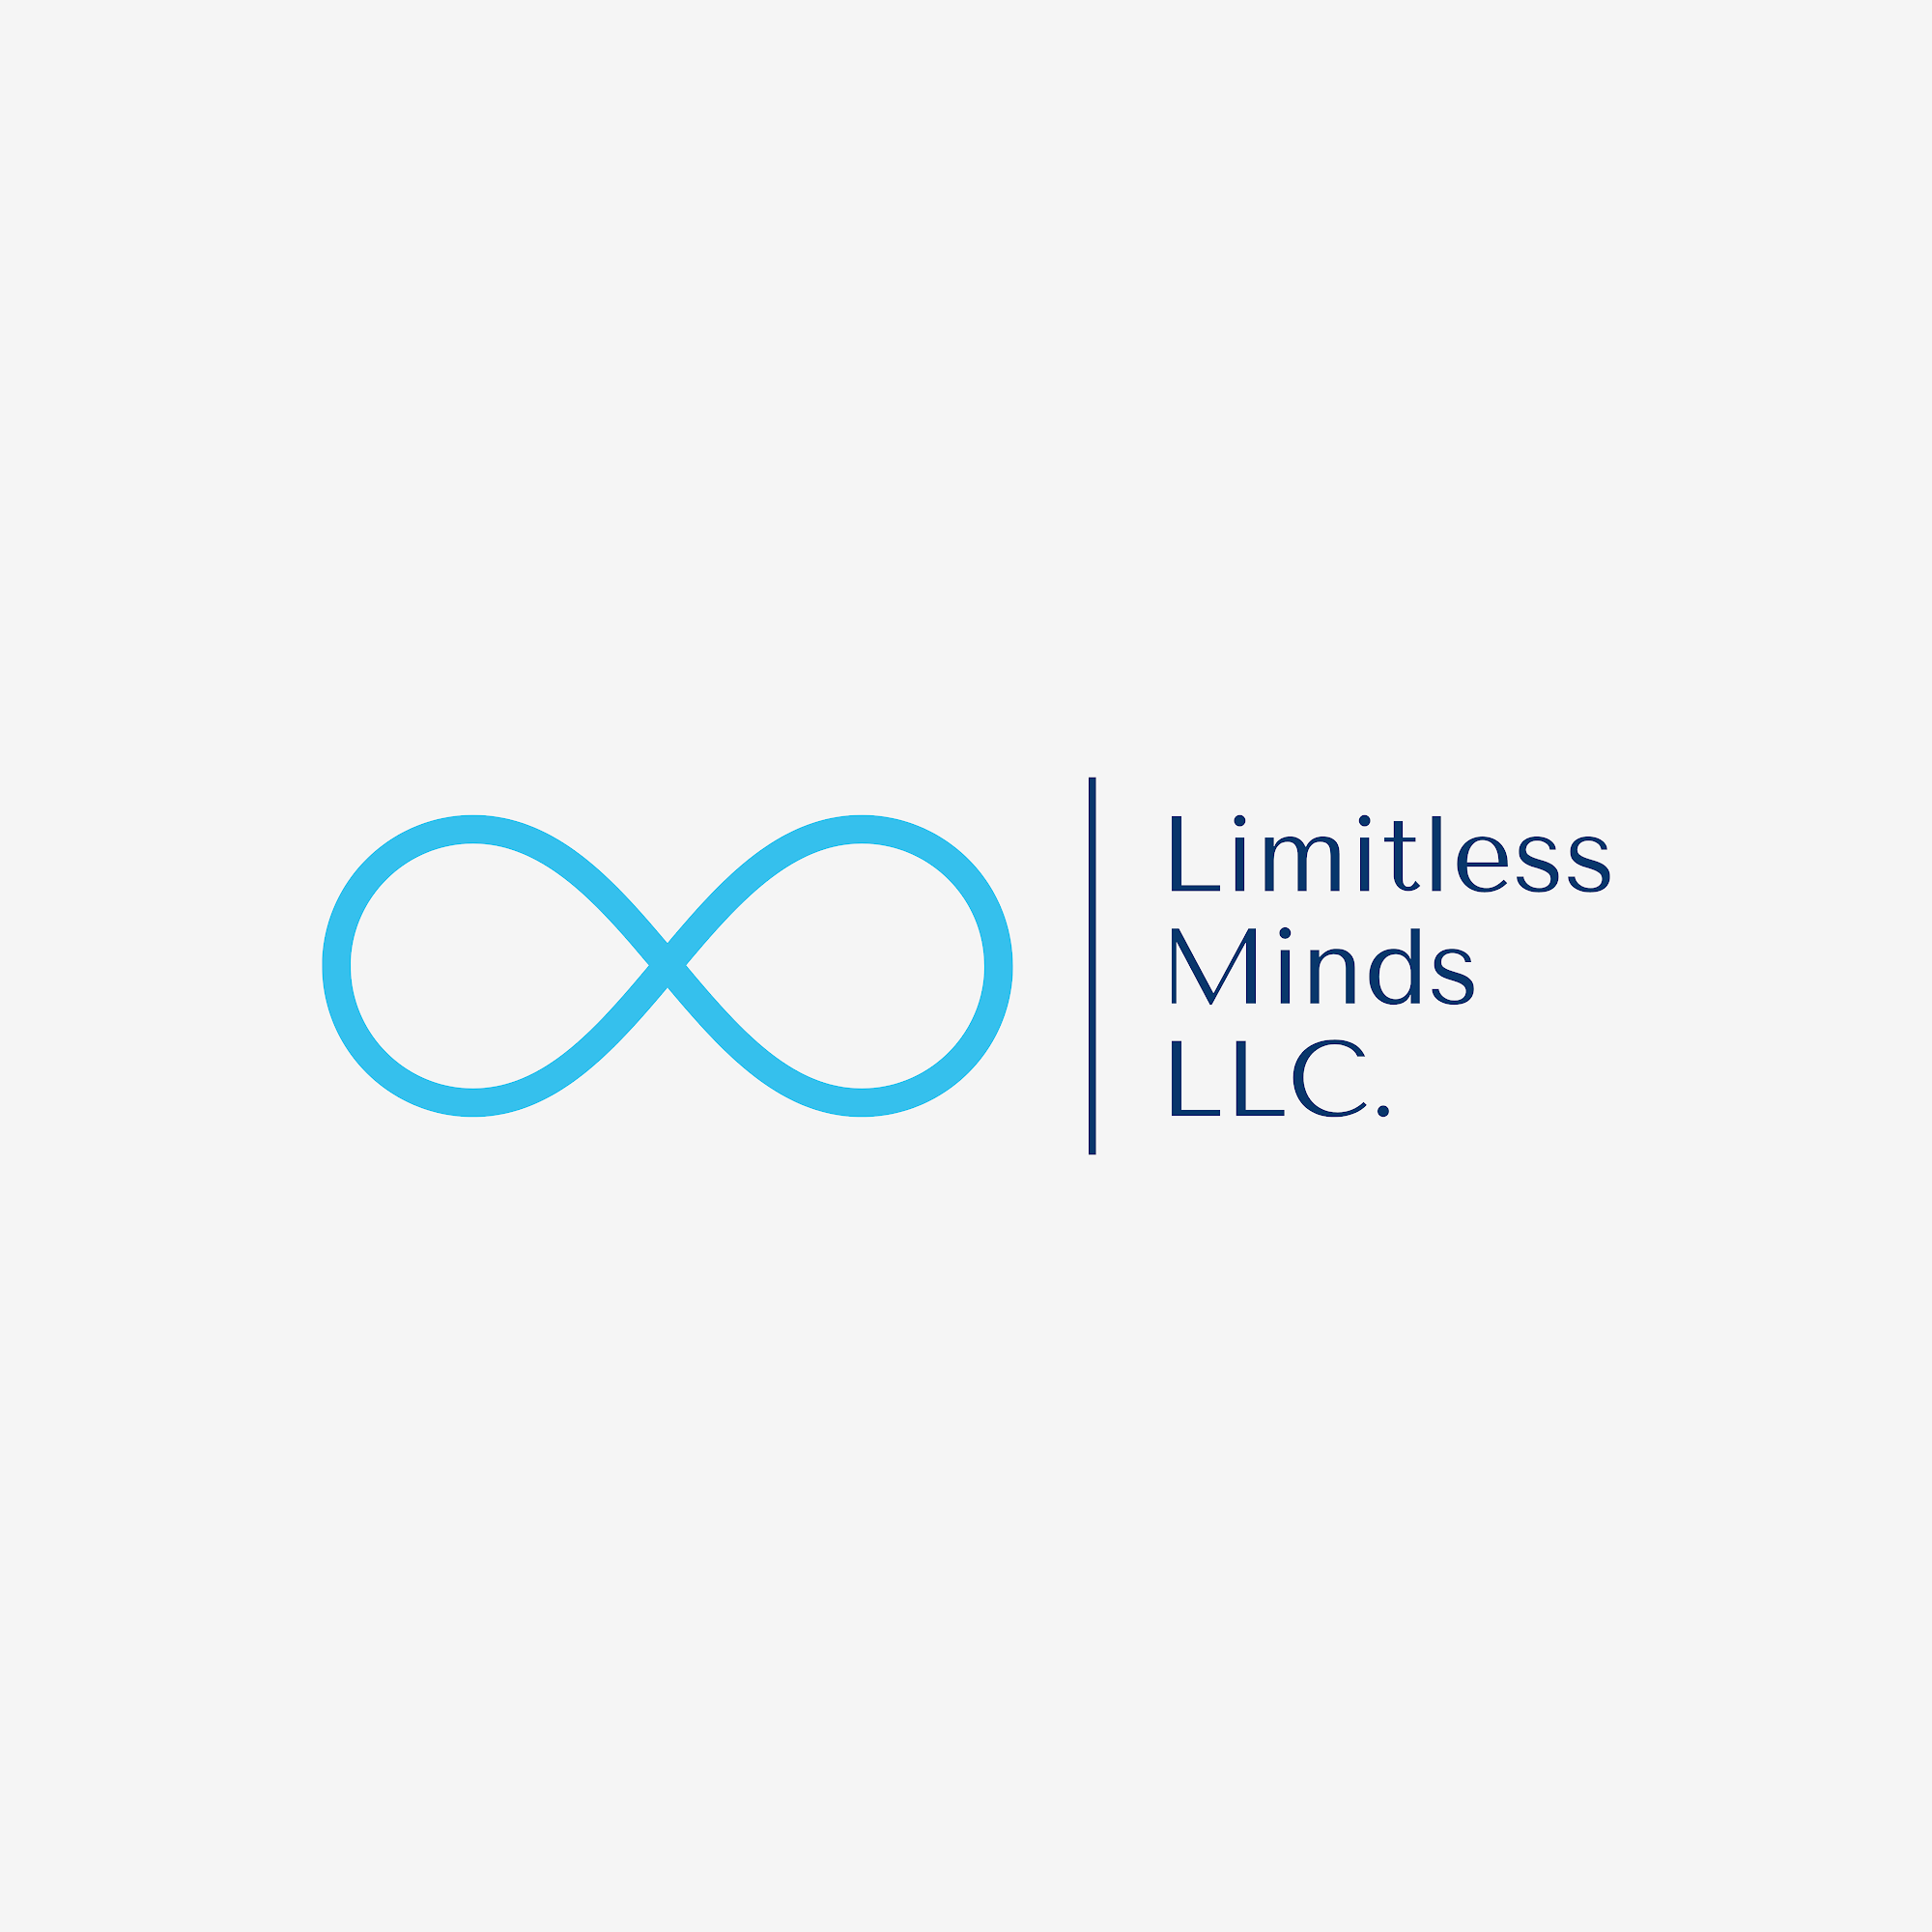 Limitless Minds LLC. 1118 S Main St Suite 2, Morgantown Kentucky 42261